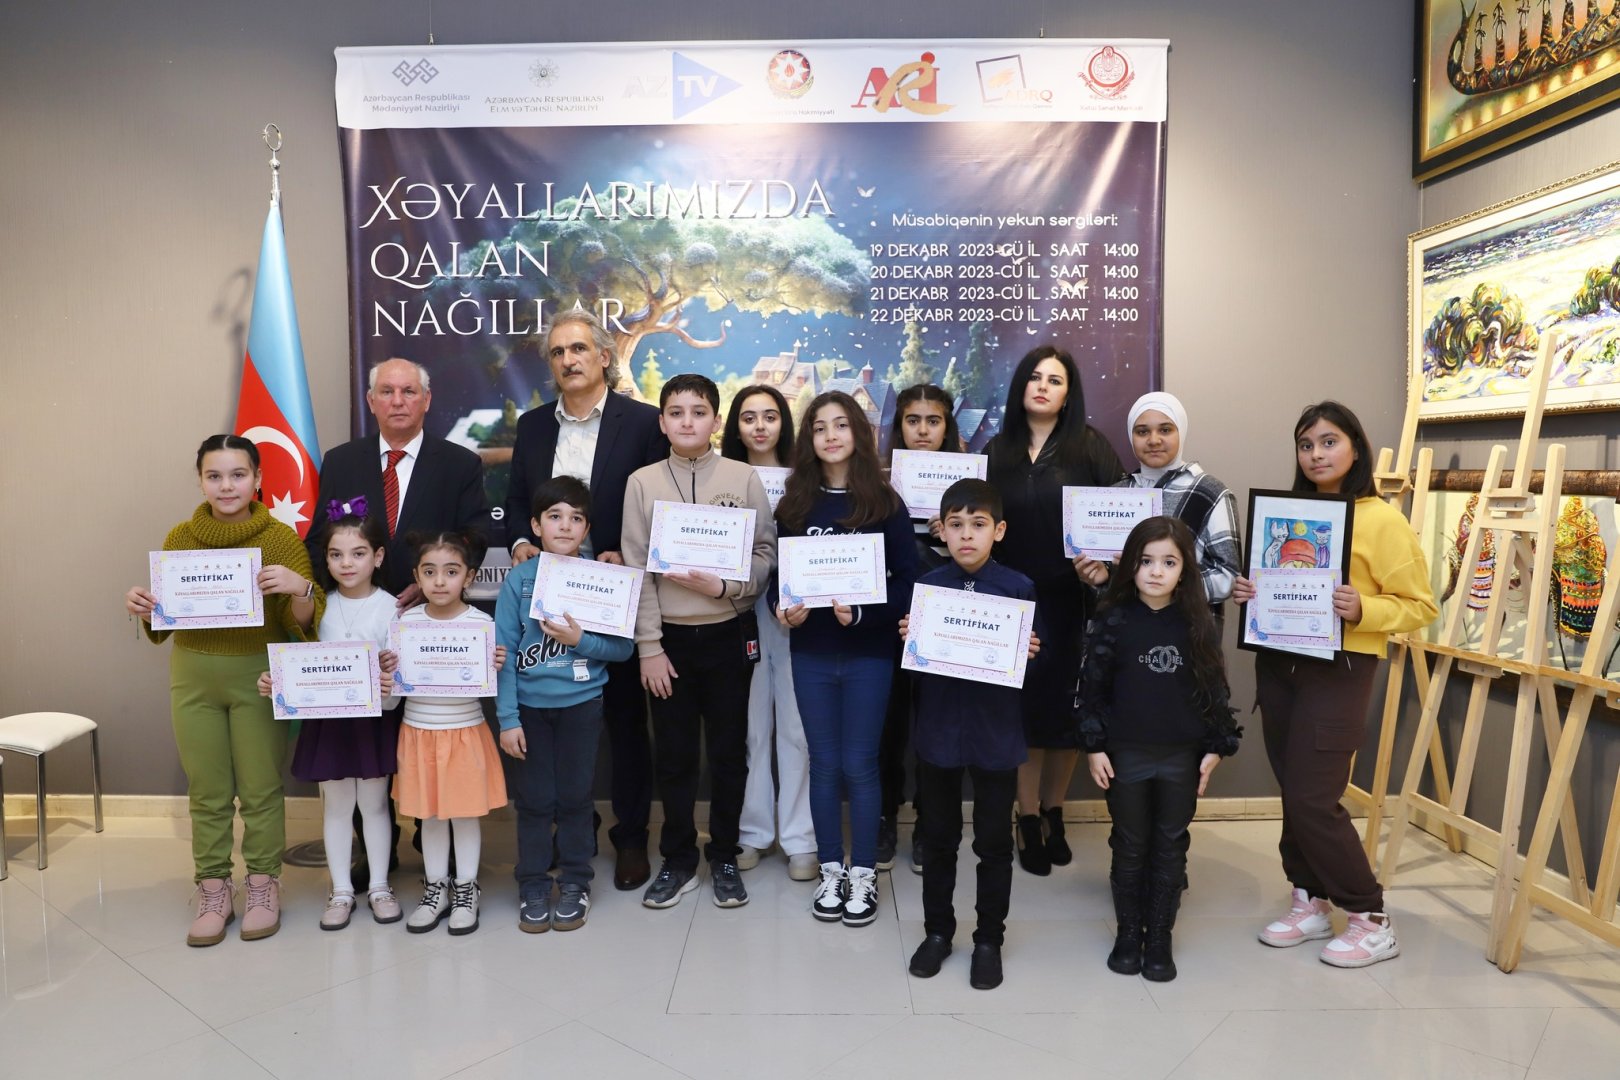 Сказки, оставшиеся в мечтах – выставка в Баку (ФОТО)